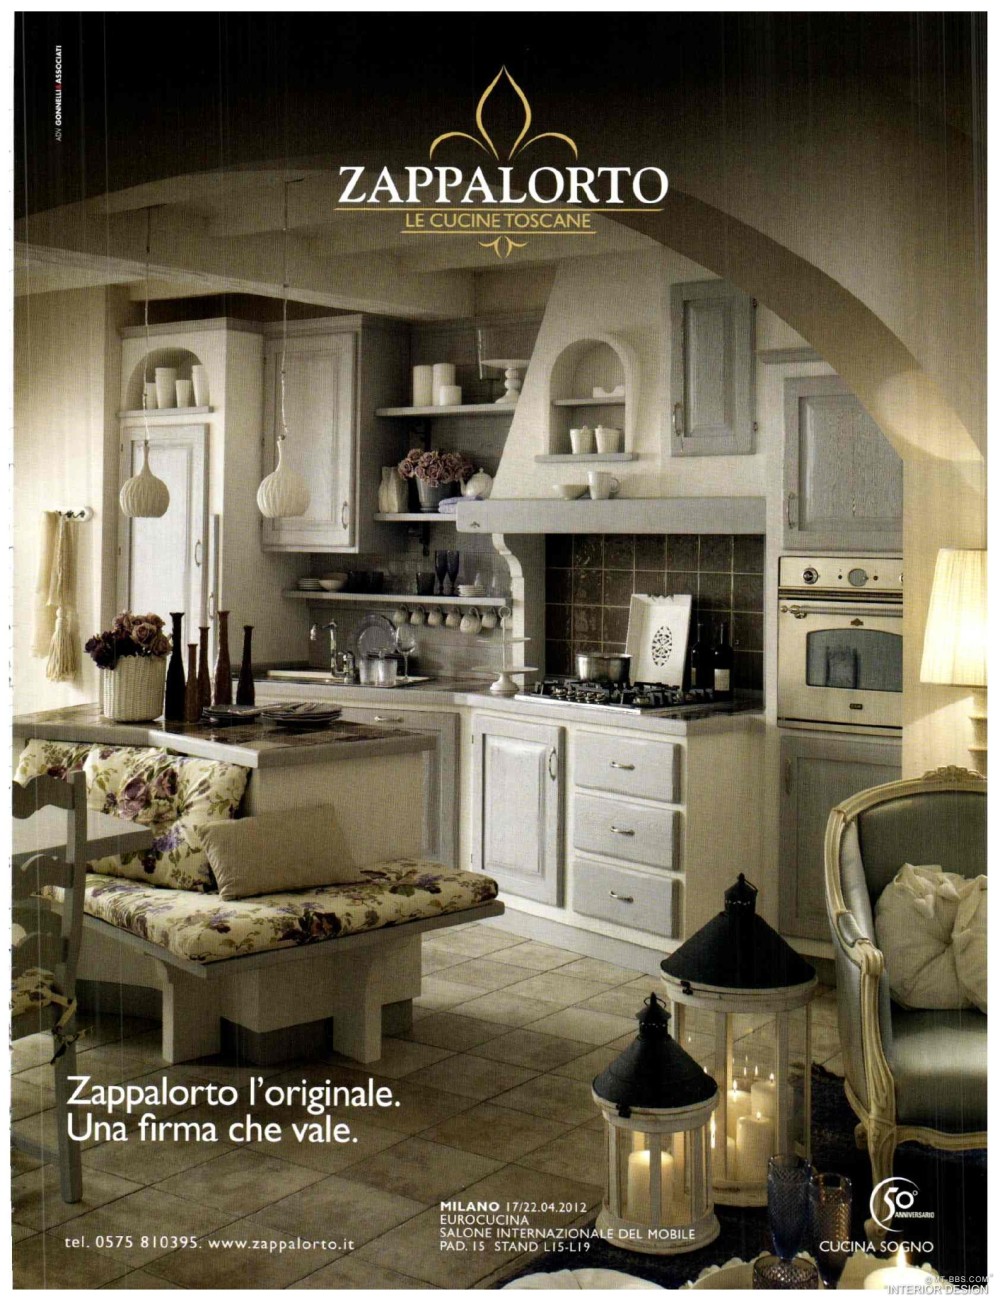 意大利AD 杂志 2012年全年JPG高清版本 全免（上传完毕）_0383.jpg